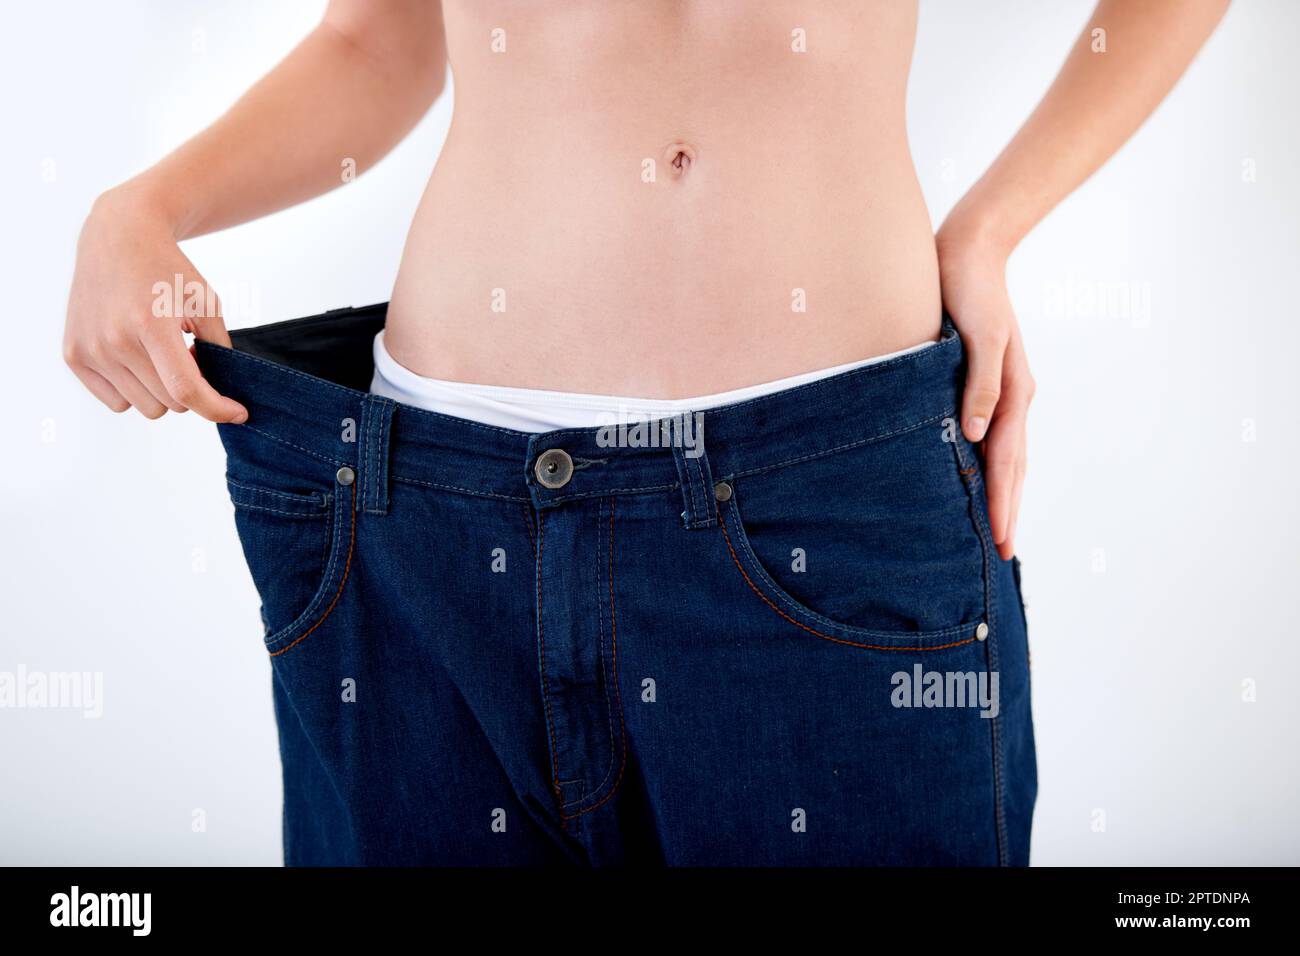 Atteindre ses objectifs de perte de poids. Image rognée d'une femme tirant  la ceinture de son pantalon - perte de poids Photo Stock - Alamy